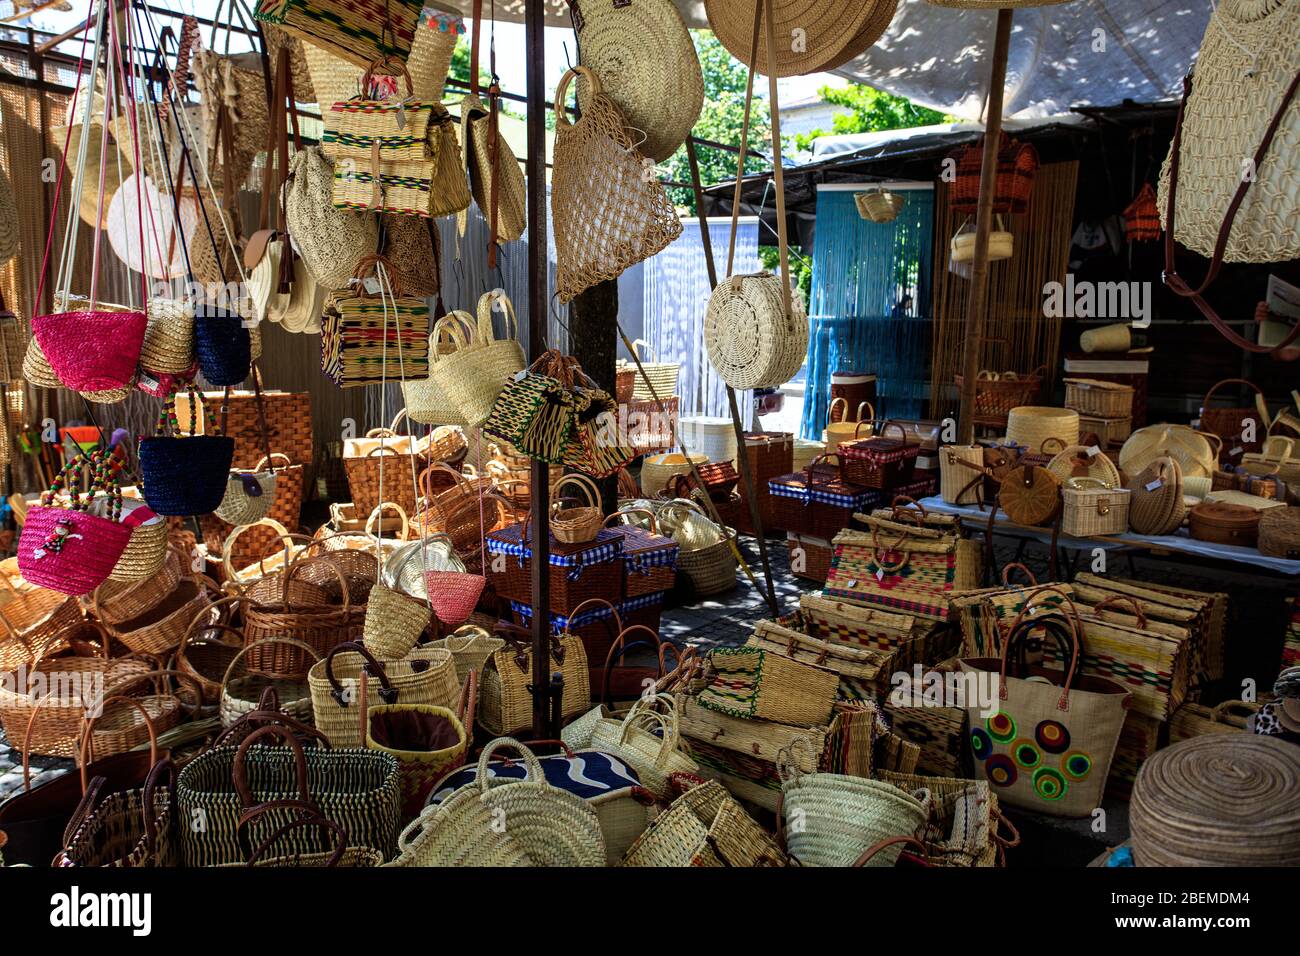 Mercado de Barcelos Stock Photo